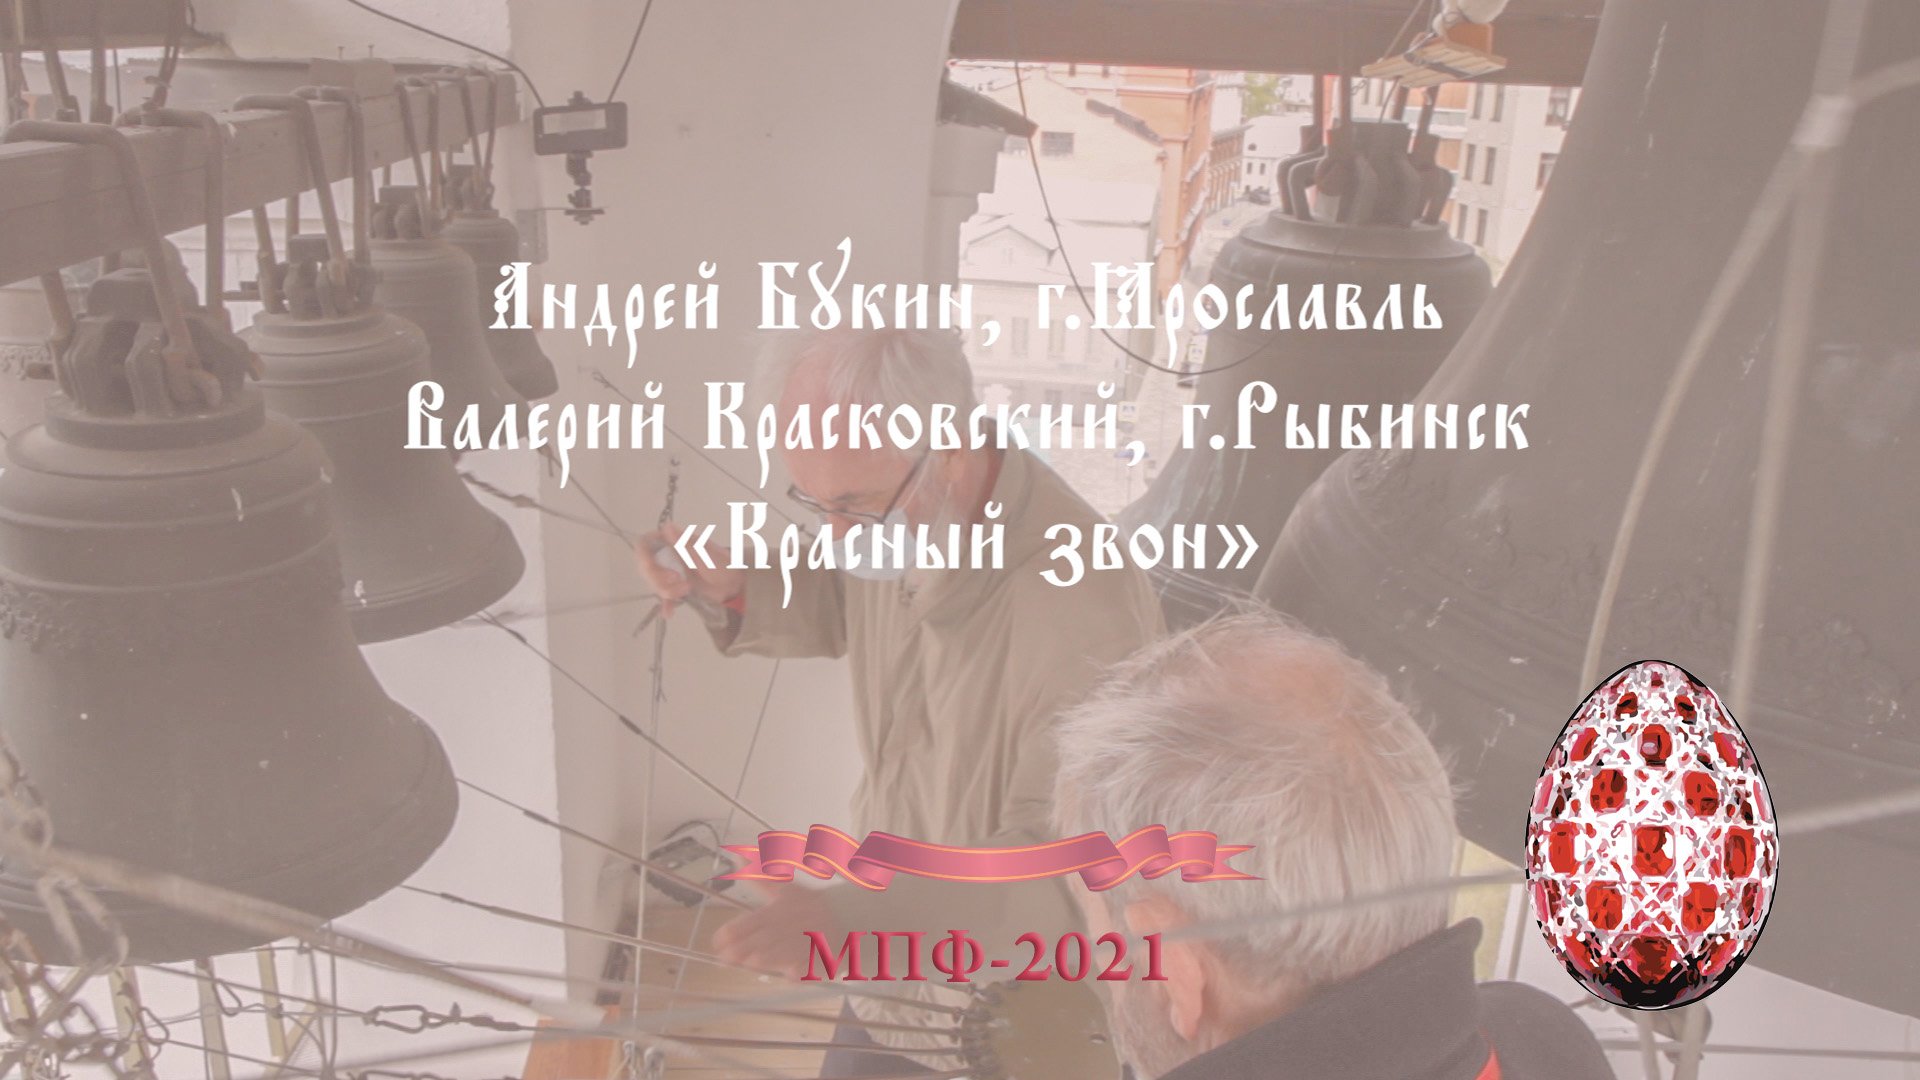 Красный звон (фрагмент), звонари Андрей Букин, г.Ярославль и Валерий Красковский, г.Рыбинск